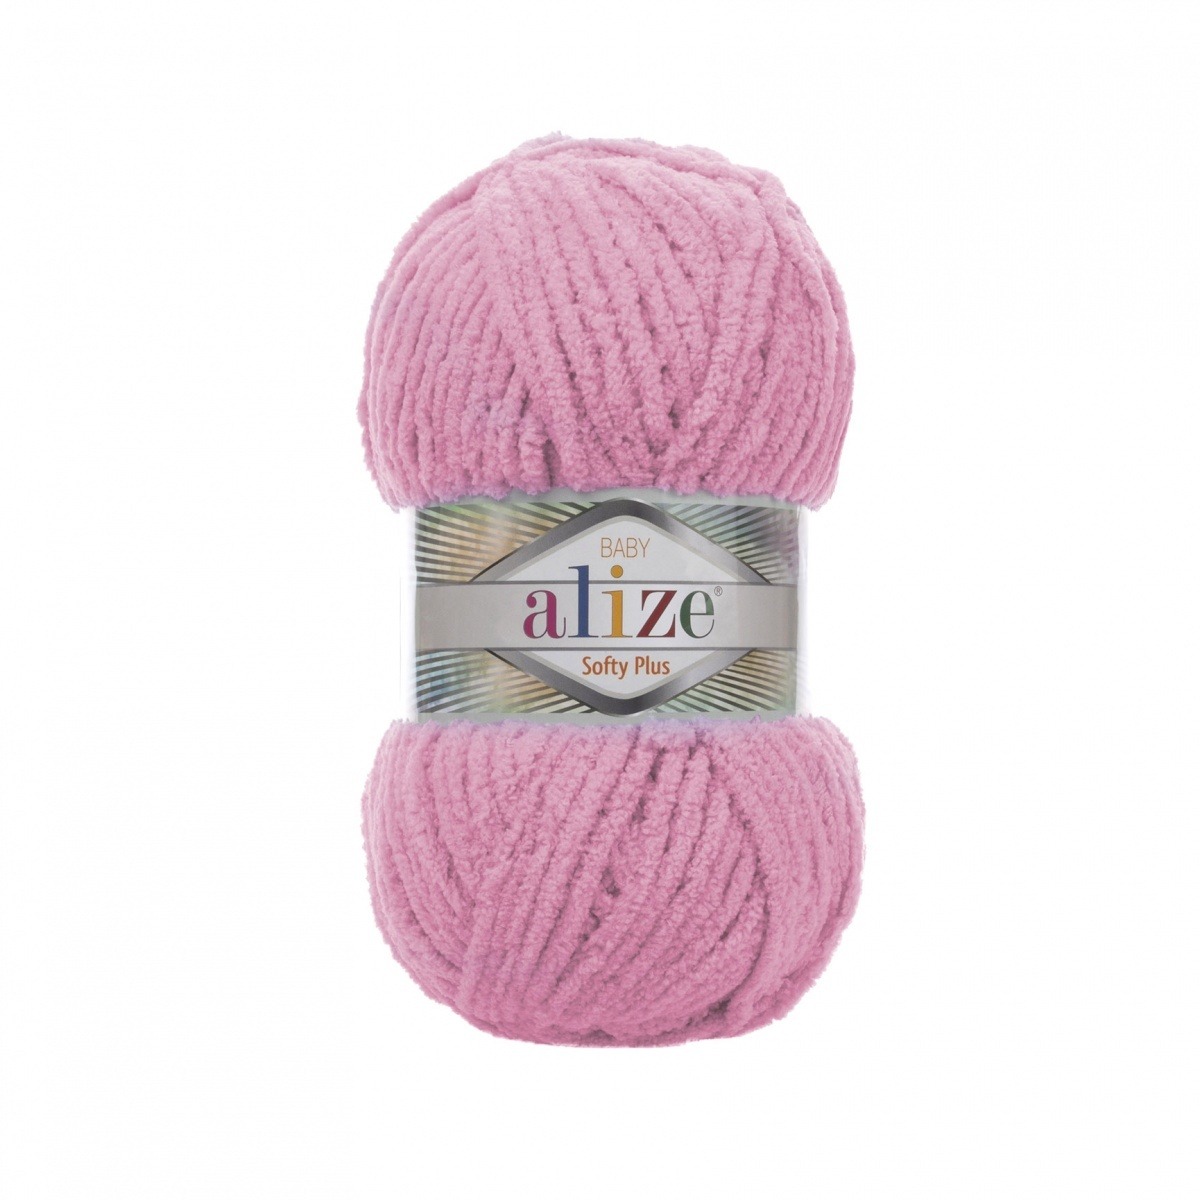 Alize "Softy Plus" (185)